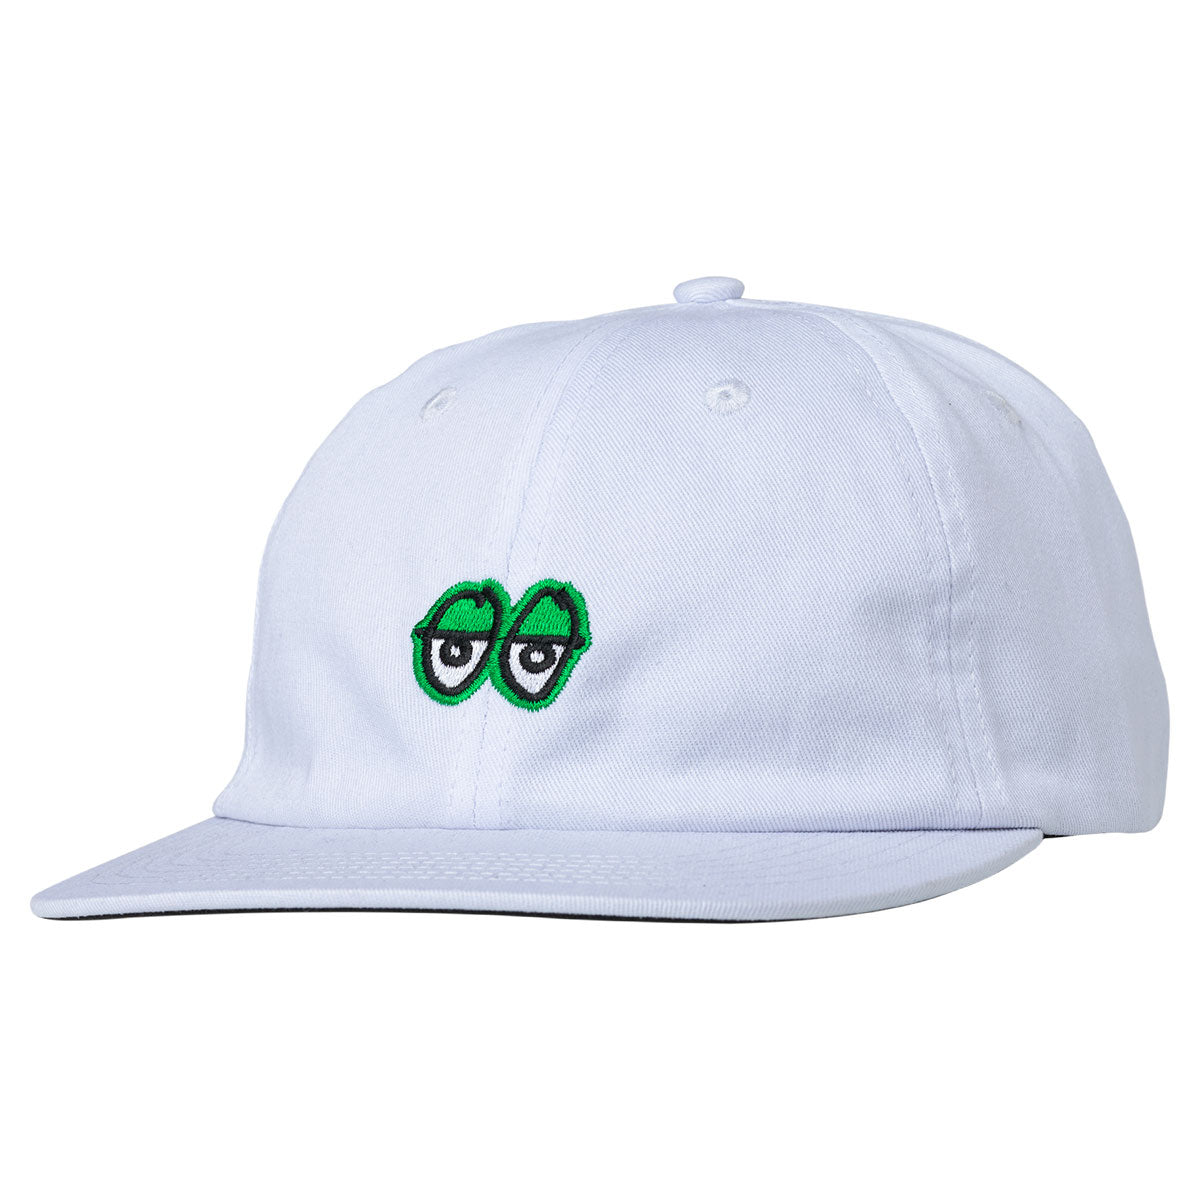 Krooked Eyes Strapback Hat - White/Green image 1